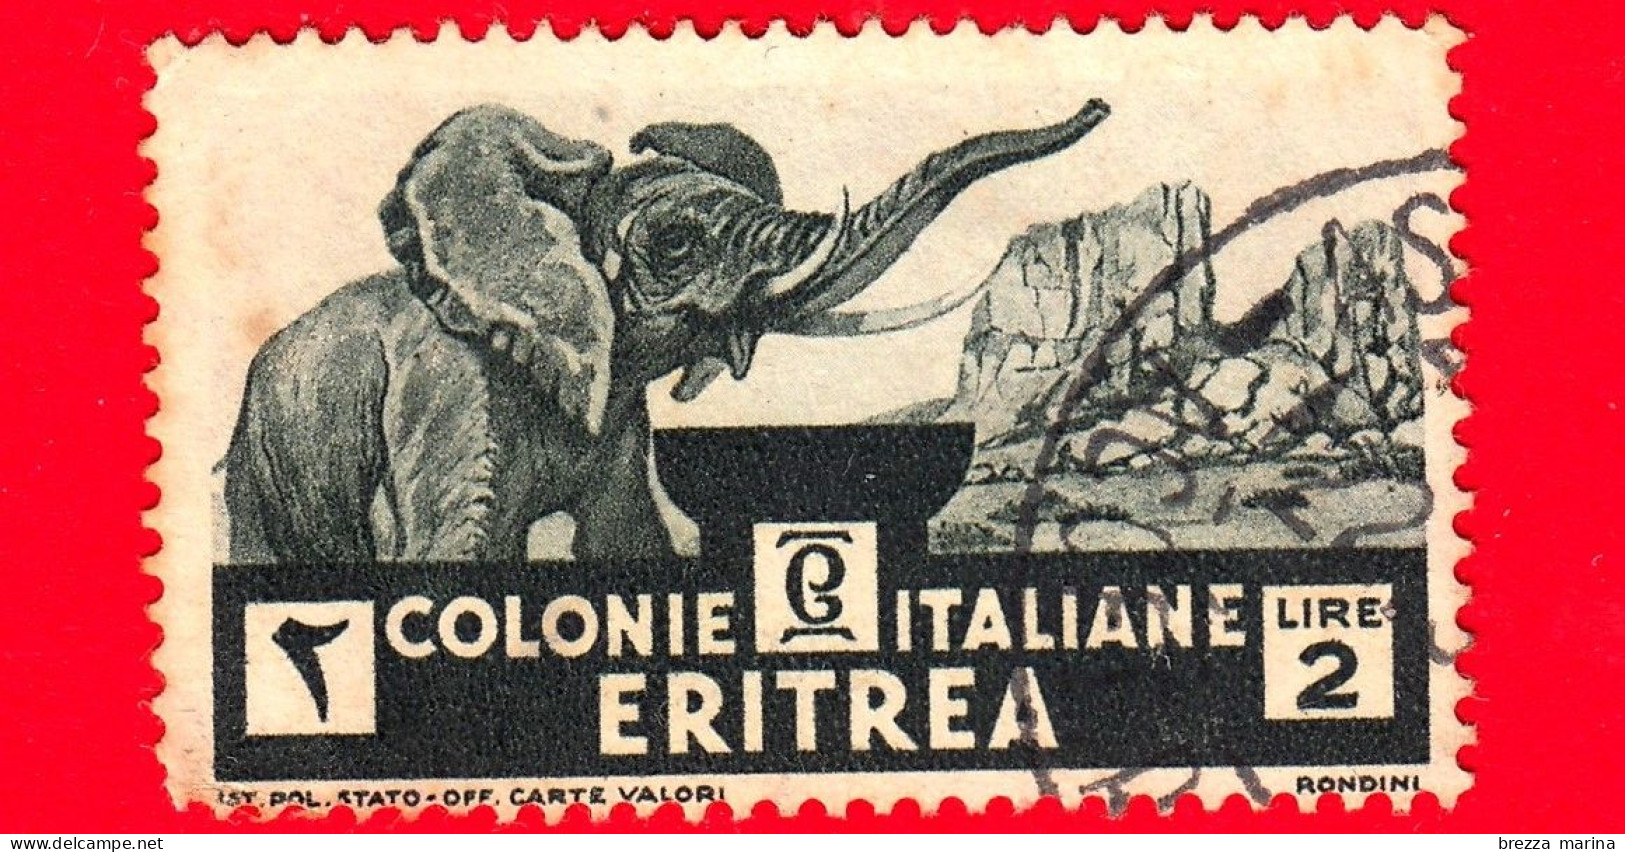 ITALIA - COLONIE ITALIANE - ERITREA - Usato - 1933 - Serie Pittorica - Elefante Africano - 2 L. - Eritrea